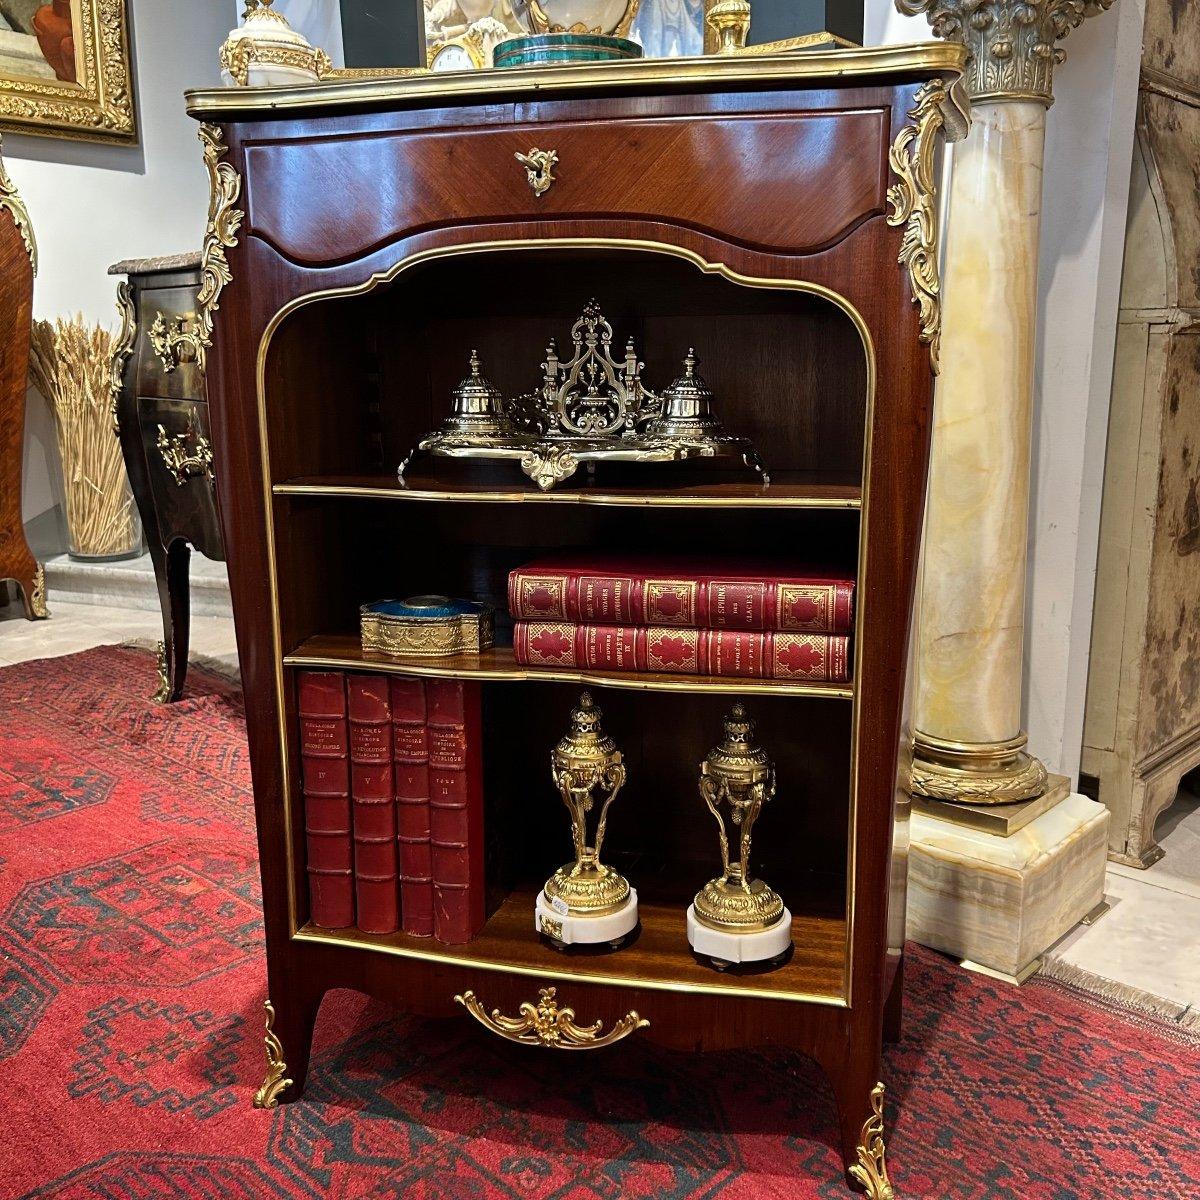 Nous vous présentons cette rare et charmante petite bibliothèque ouverte de style Louis XV, datant du 19ème siècle, connue sous le nom de 